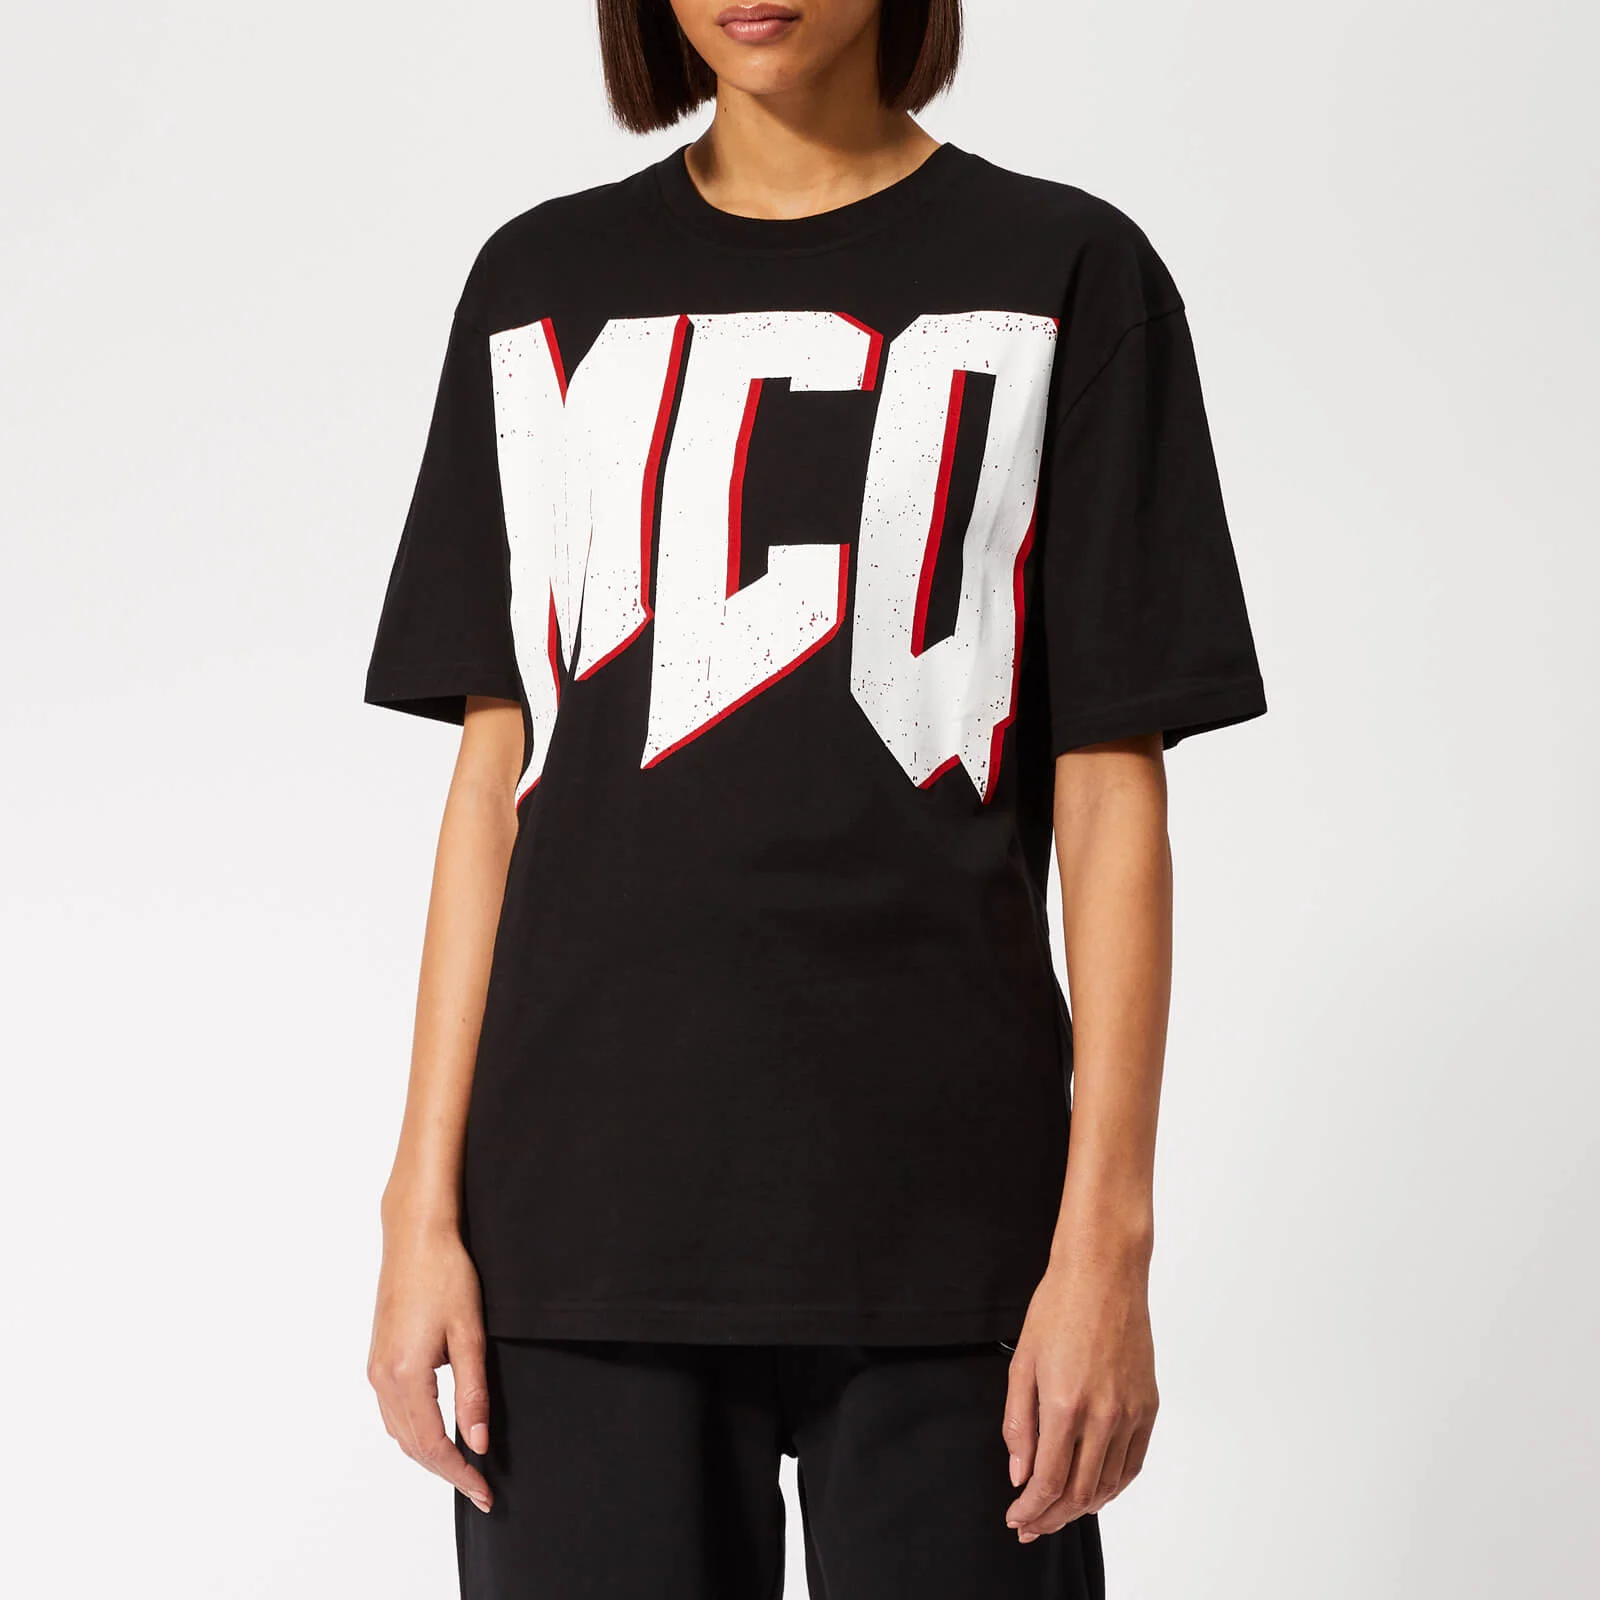 McQ Alexander McQueen Women's Boyfriend T-Shirt - Darkest Black Image 1